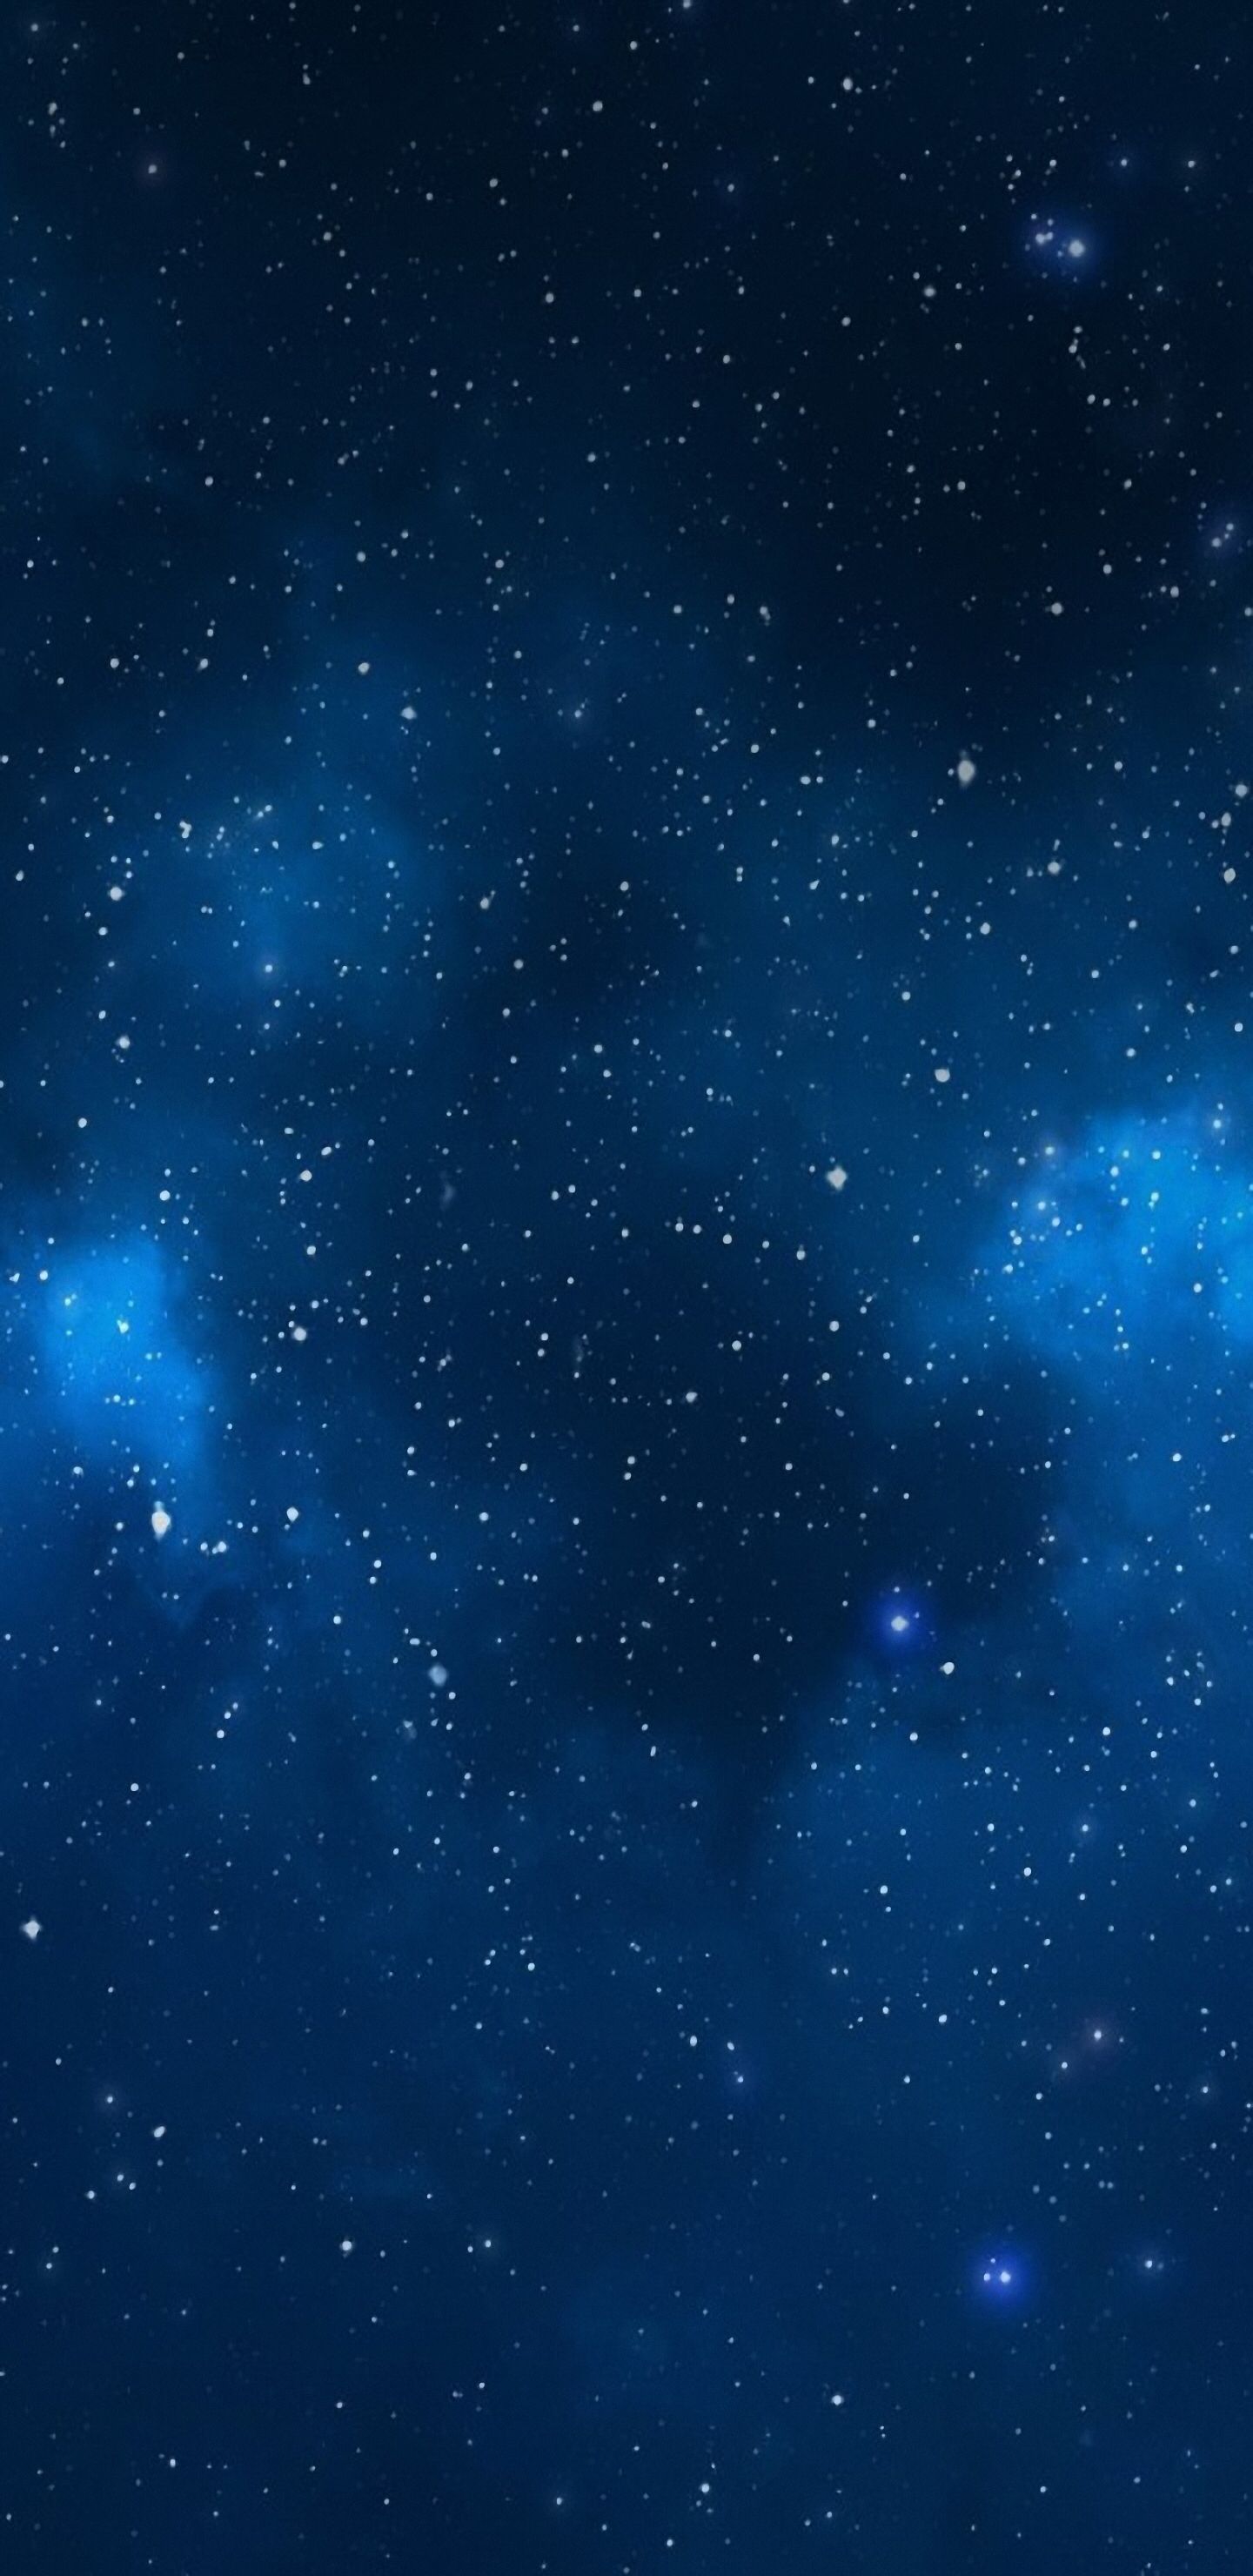 Galaxy Blue Aesthetic Wallpapers - Top Những Hình Ảnh Đẹp